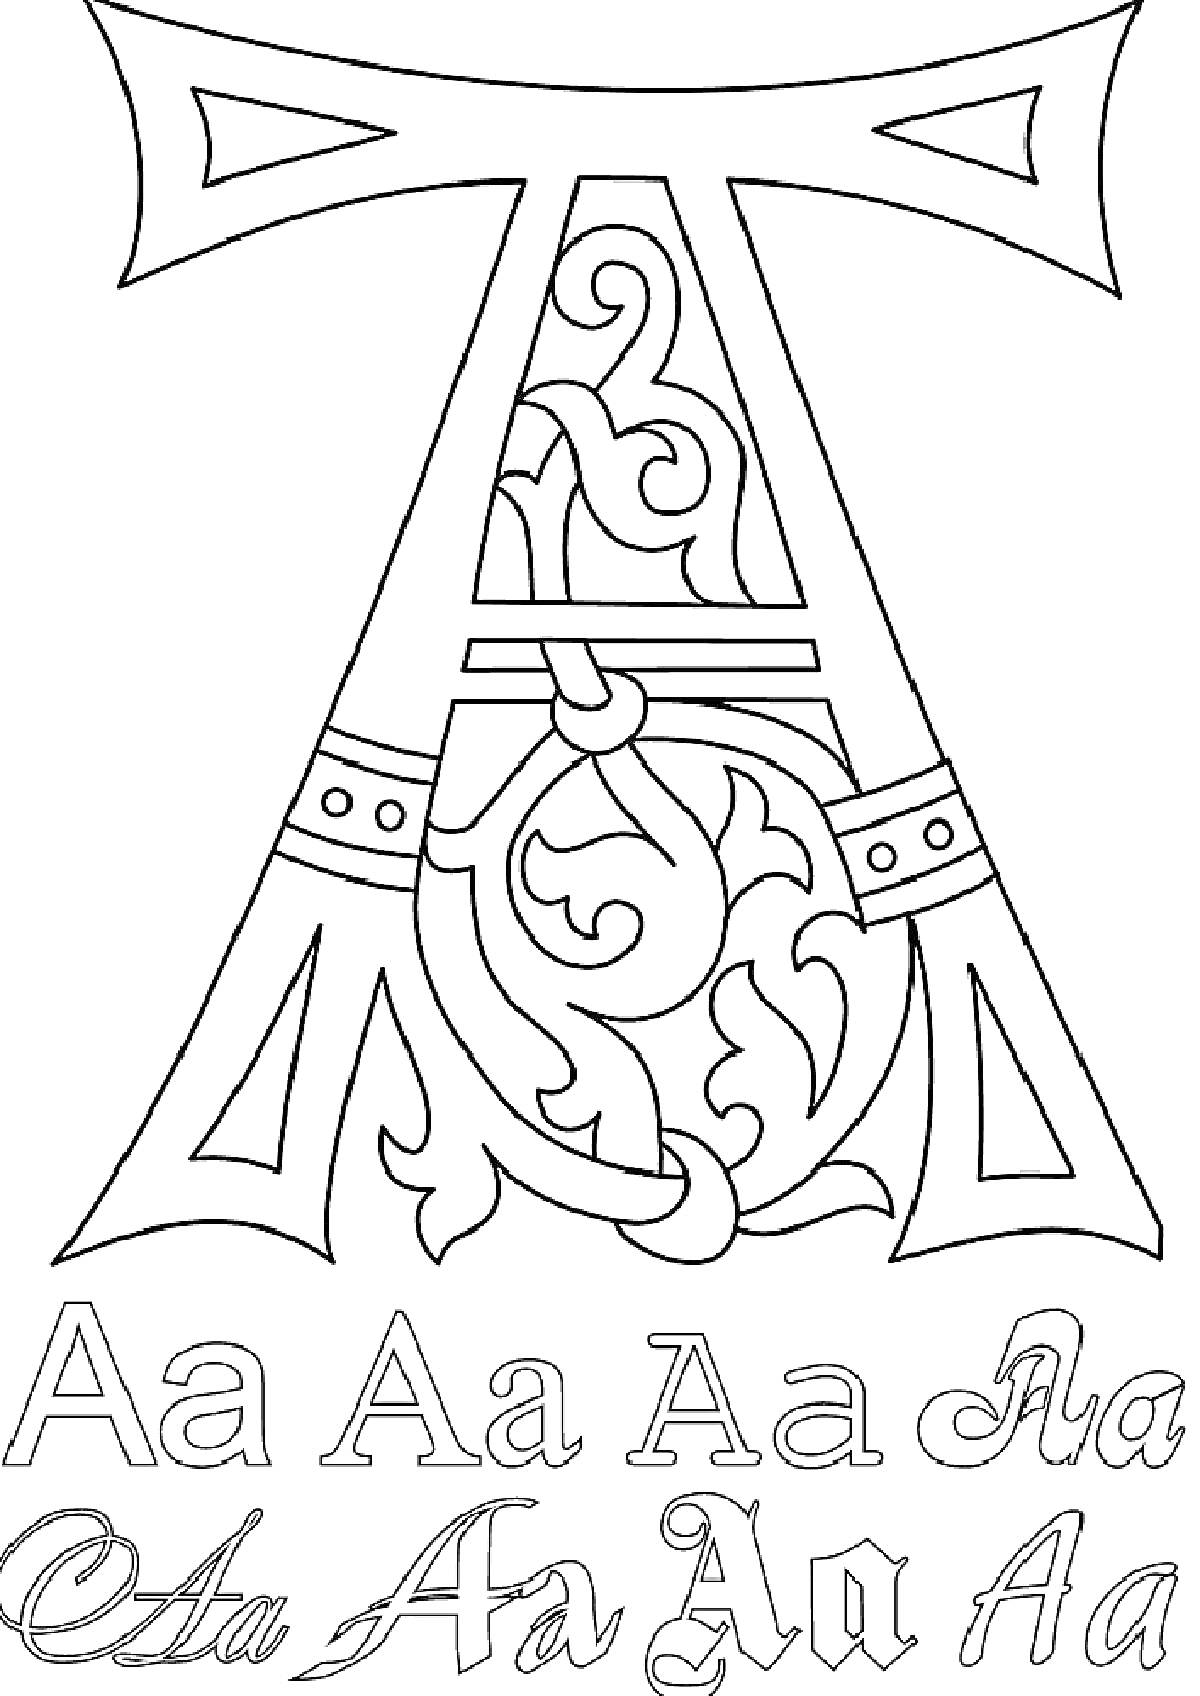 Раскраска Буква А с орнаментом и варианти написания